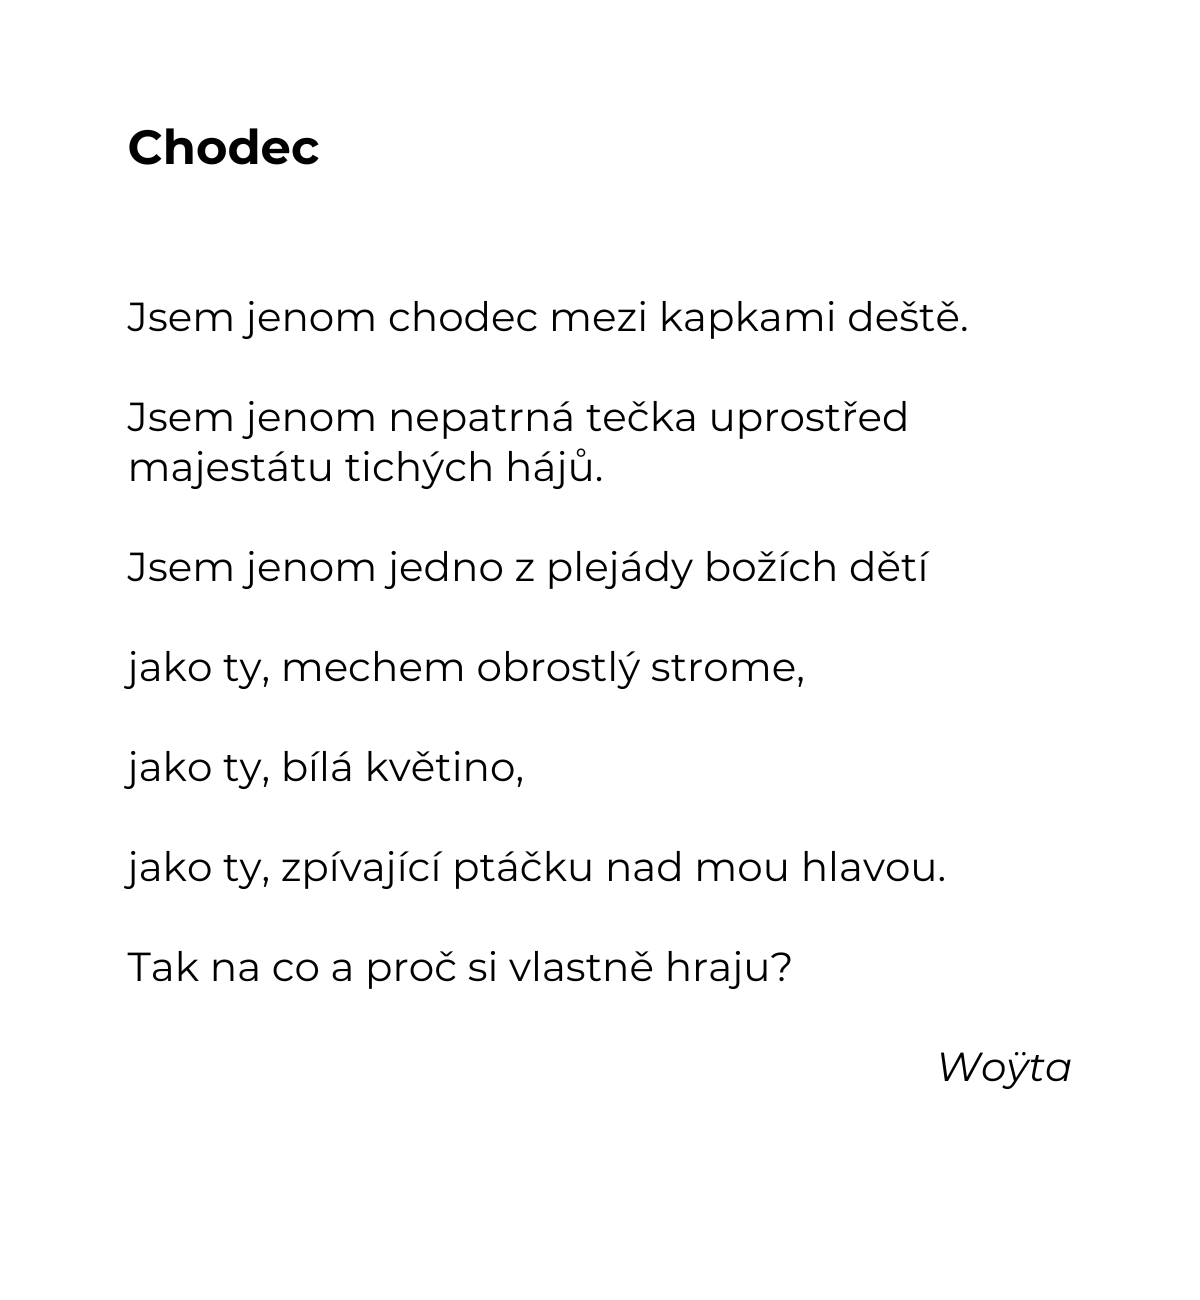 woyta-chodec.png